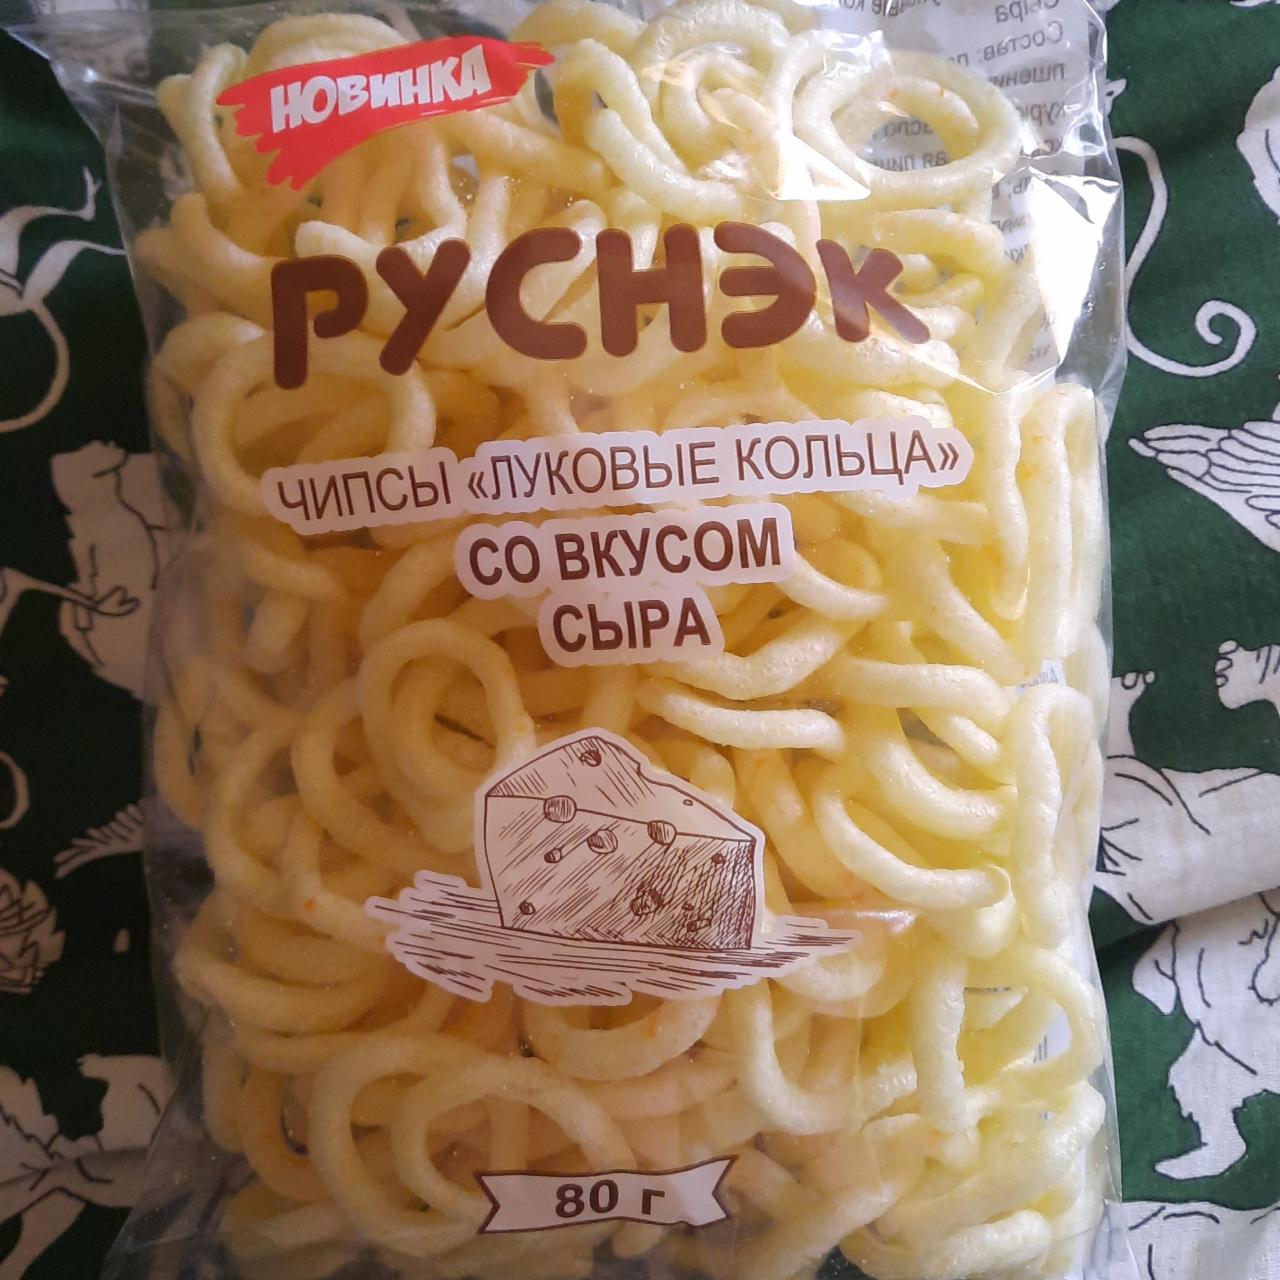 Фото - Чипсы луковые кольца со вкусом сыра Руснэк